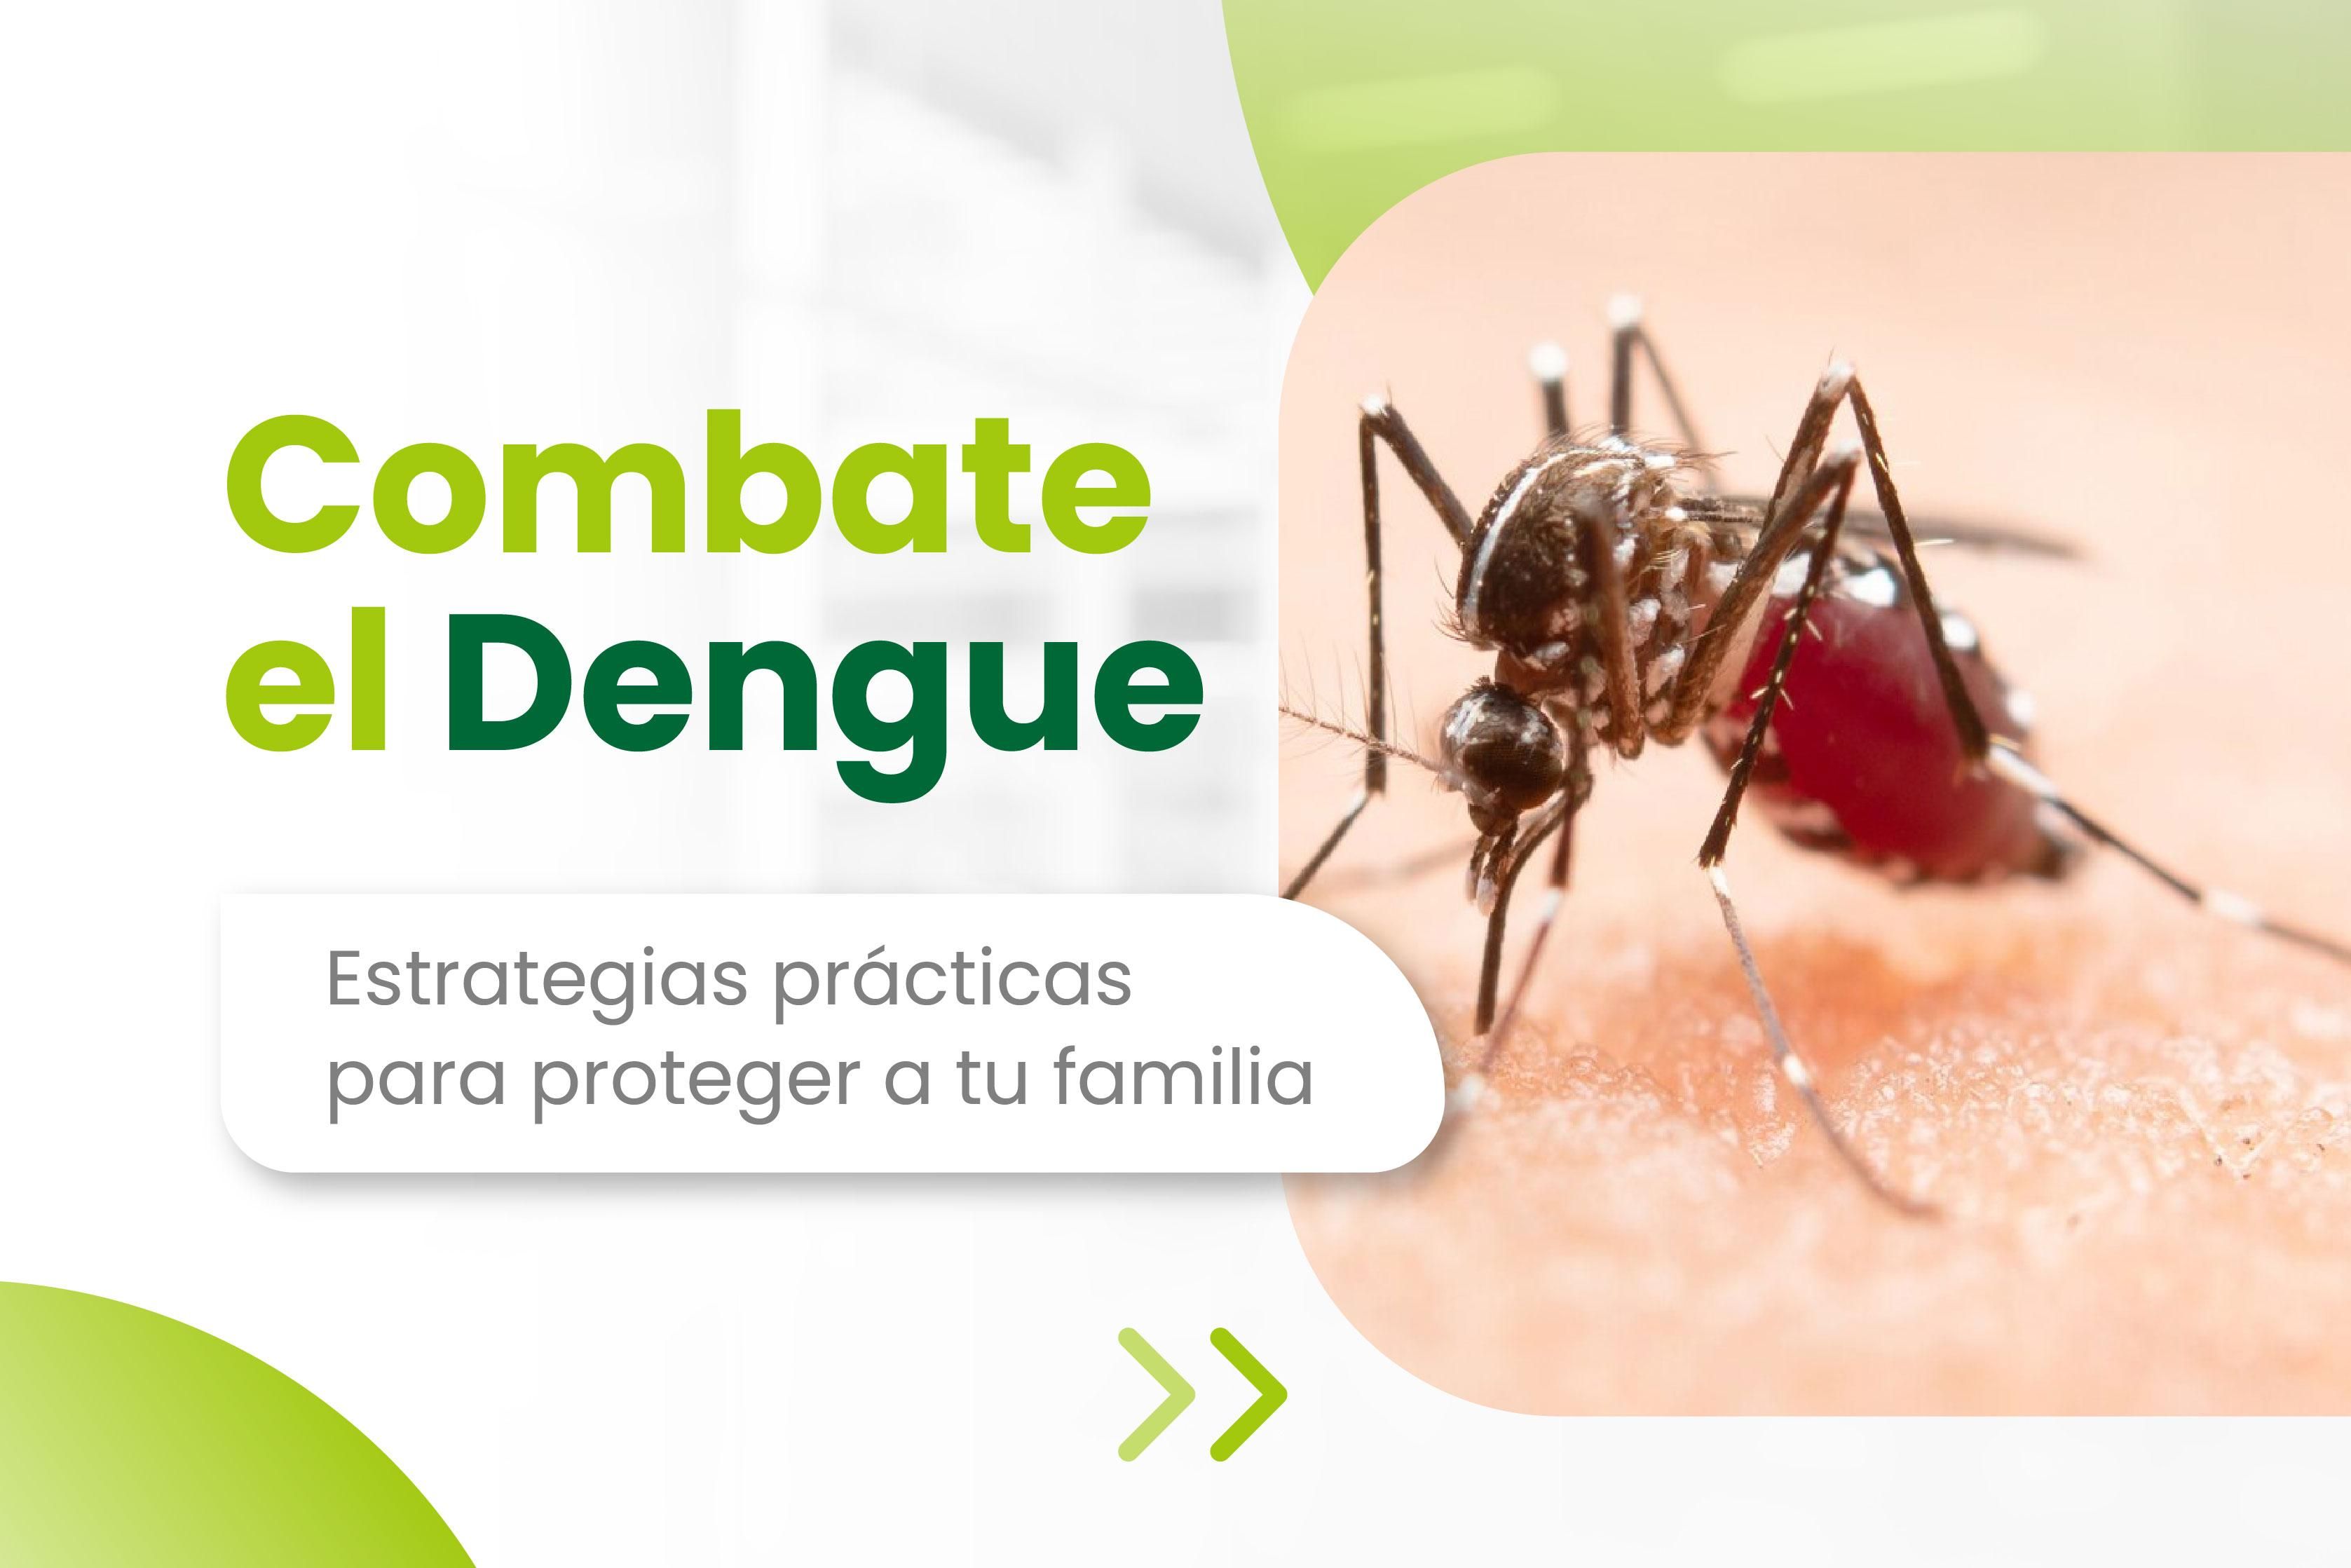 Combate el Dengue: estrategias prácticas para proteger a tu familia